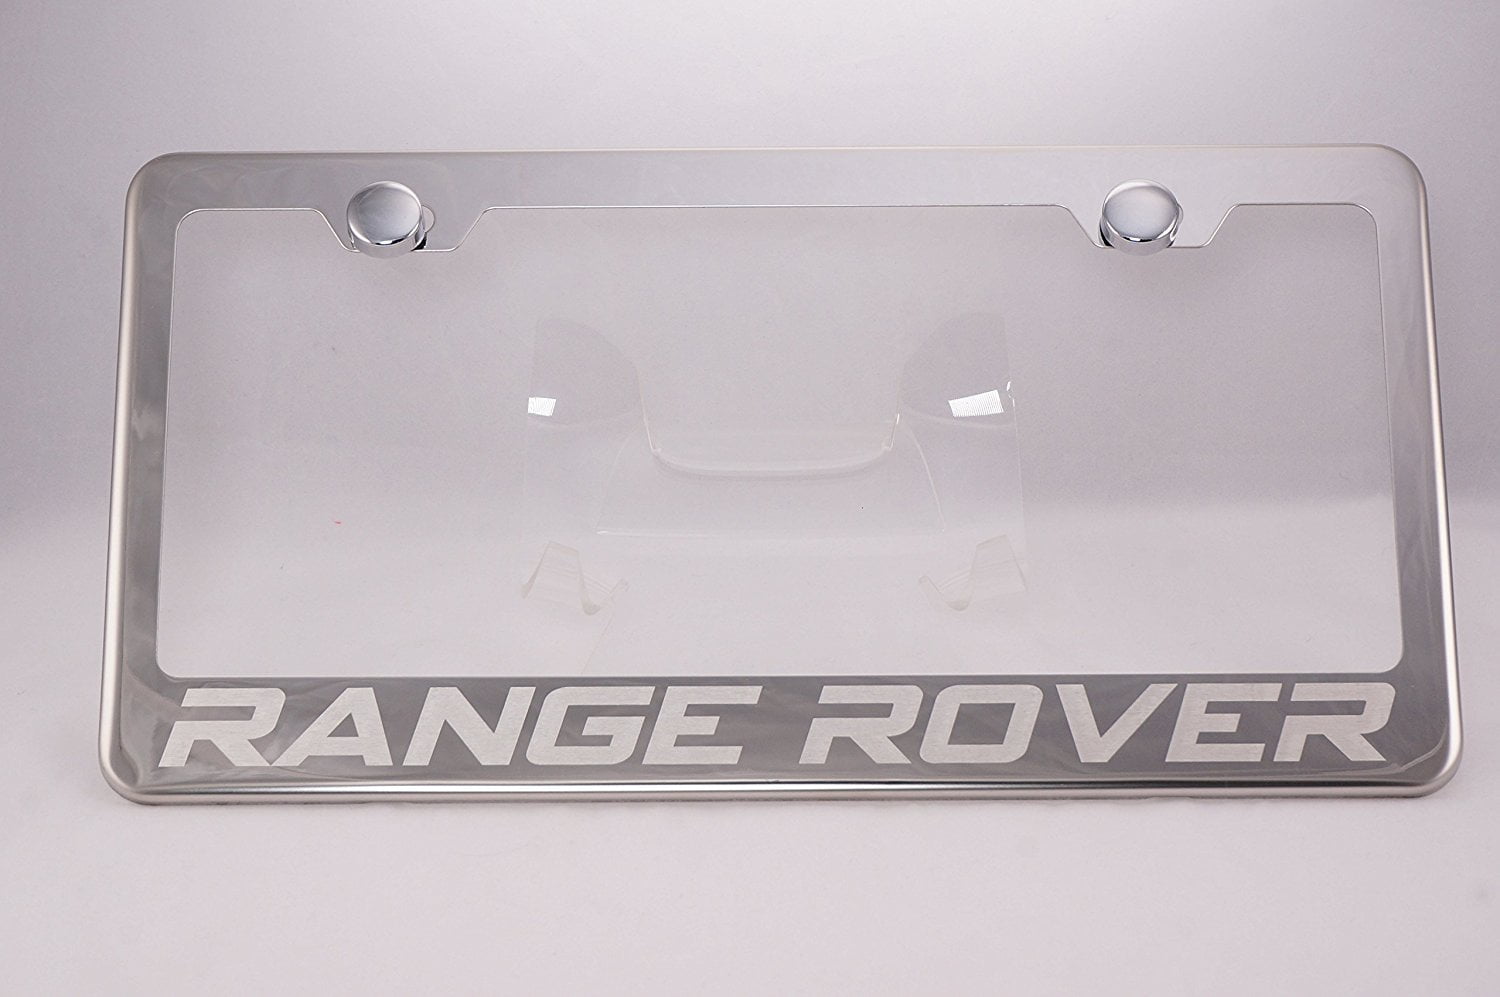 RangeRover STAINLESS STEEL Chrome Metal License Plate Frame Holder w/Screw caps